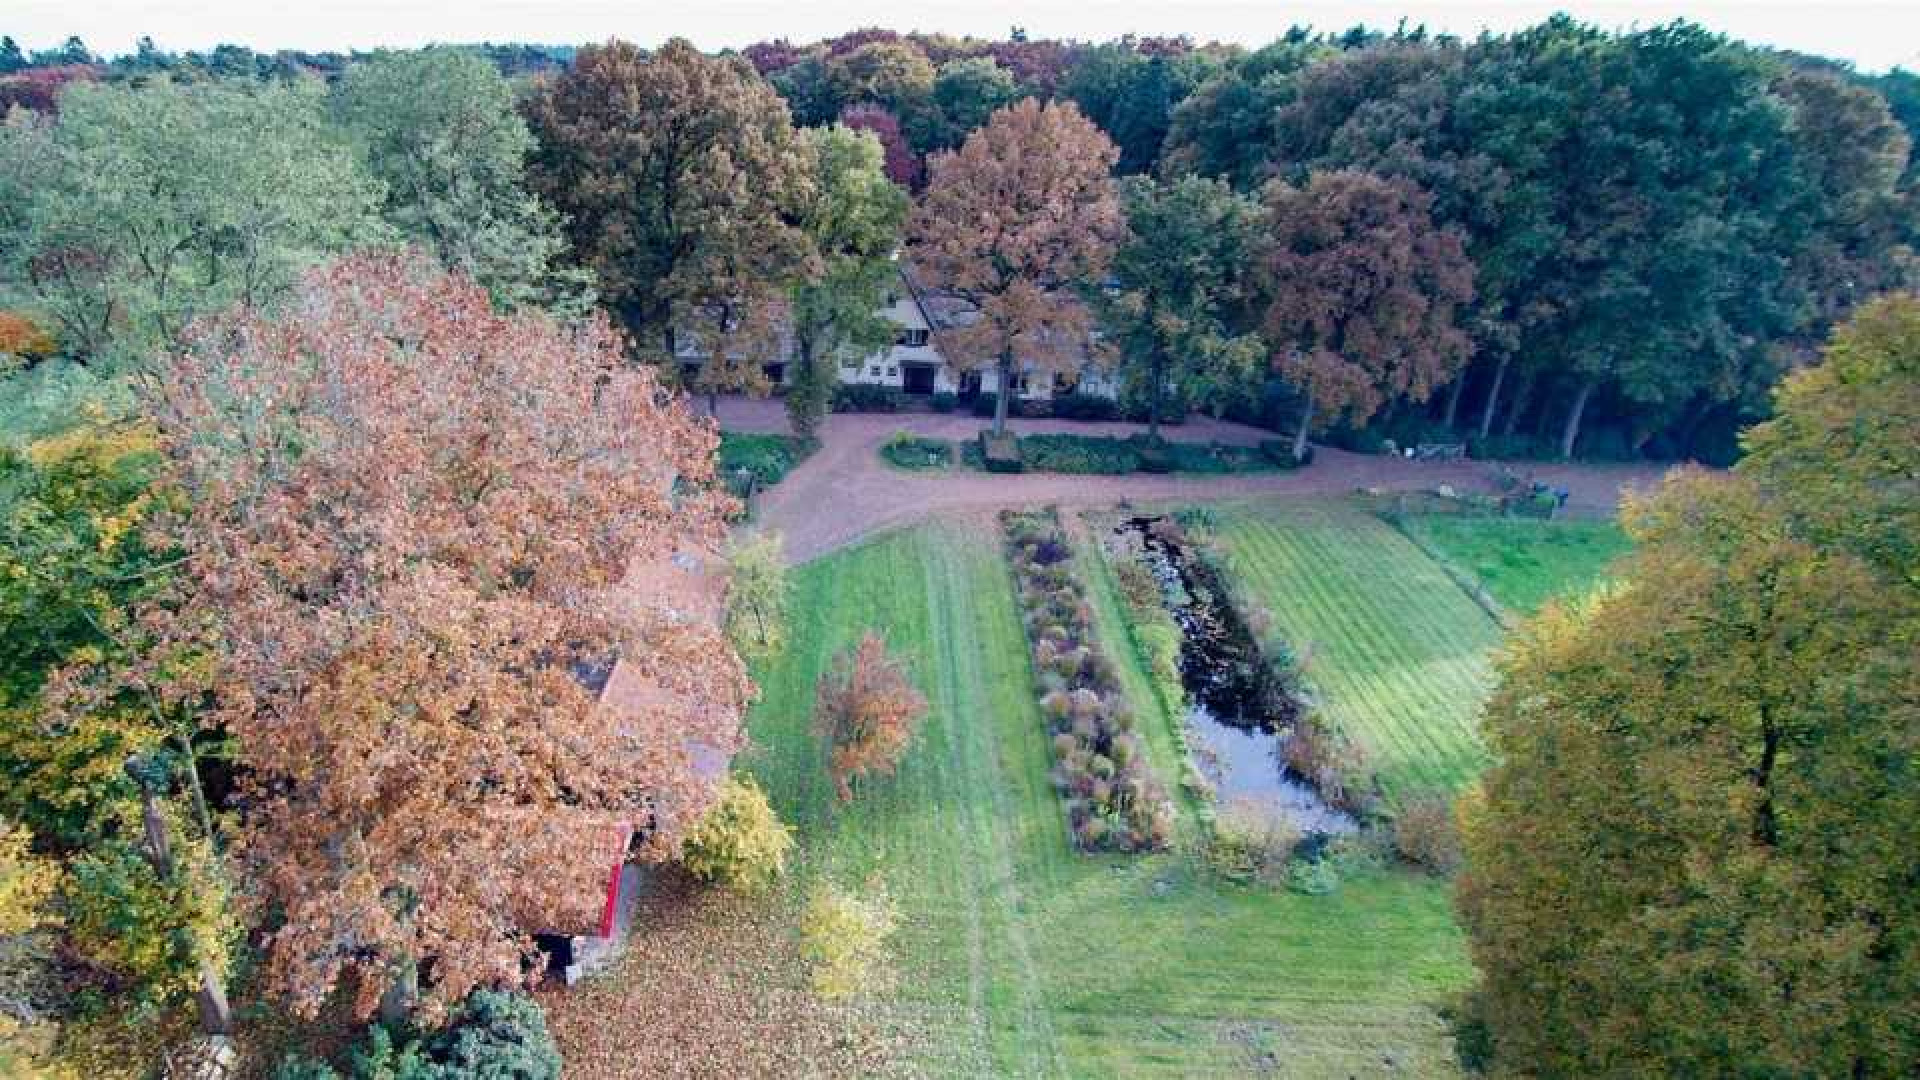 Oud PvdA topman Marcel van Dam haalt zijn landhuis uit de verkoop. Zie foto's